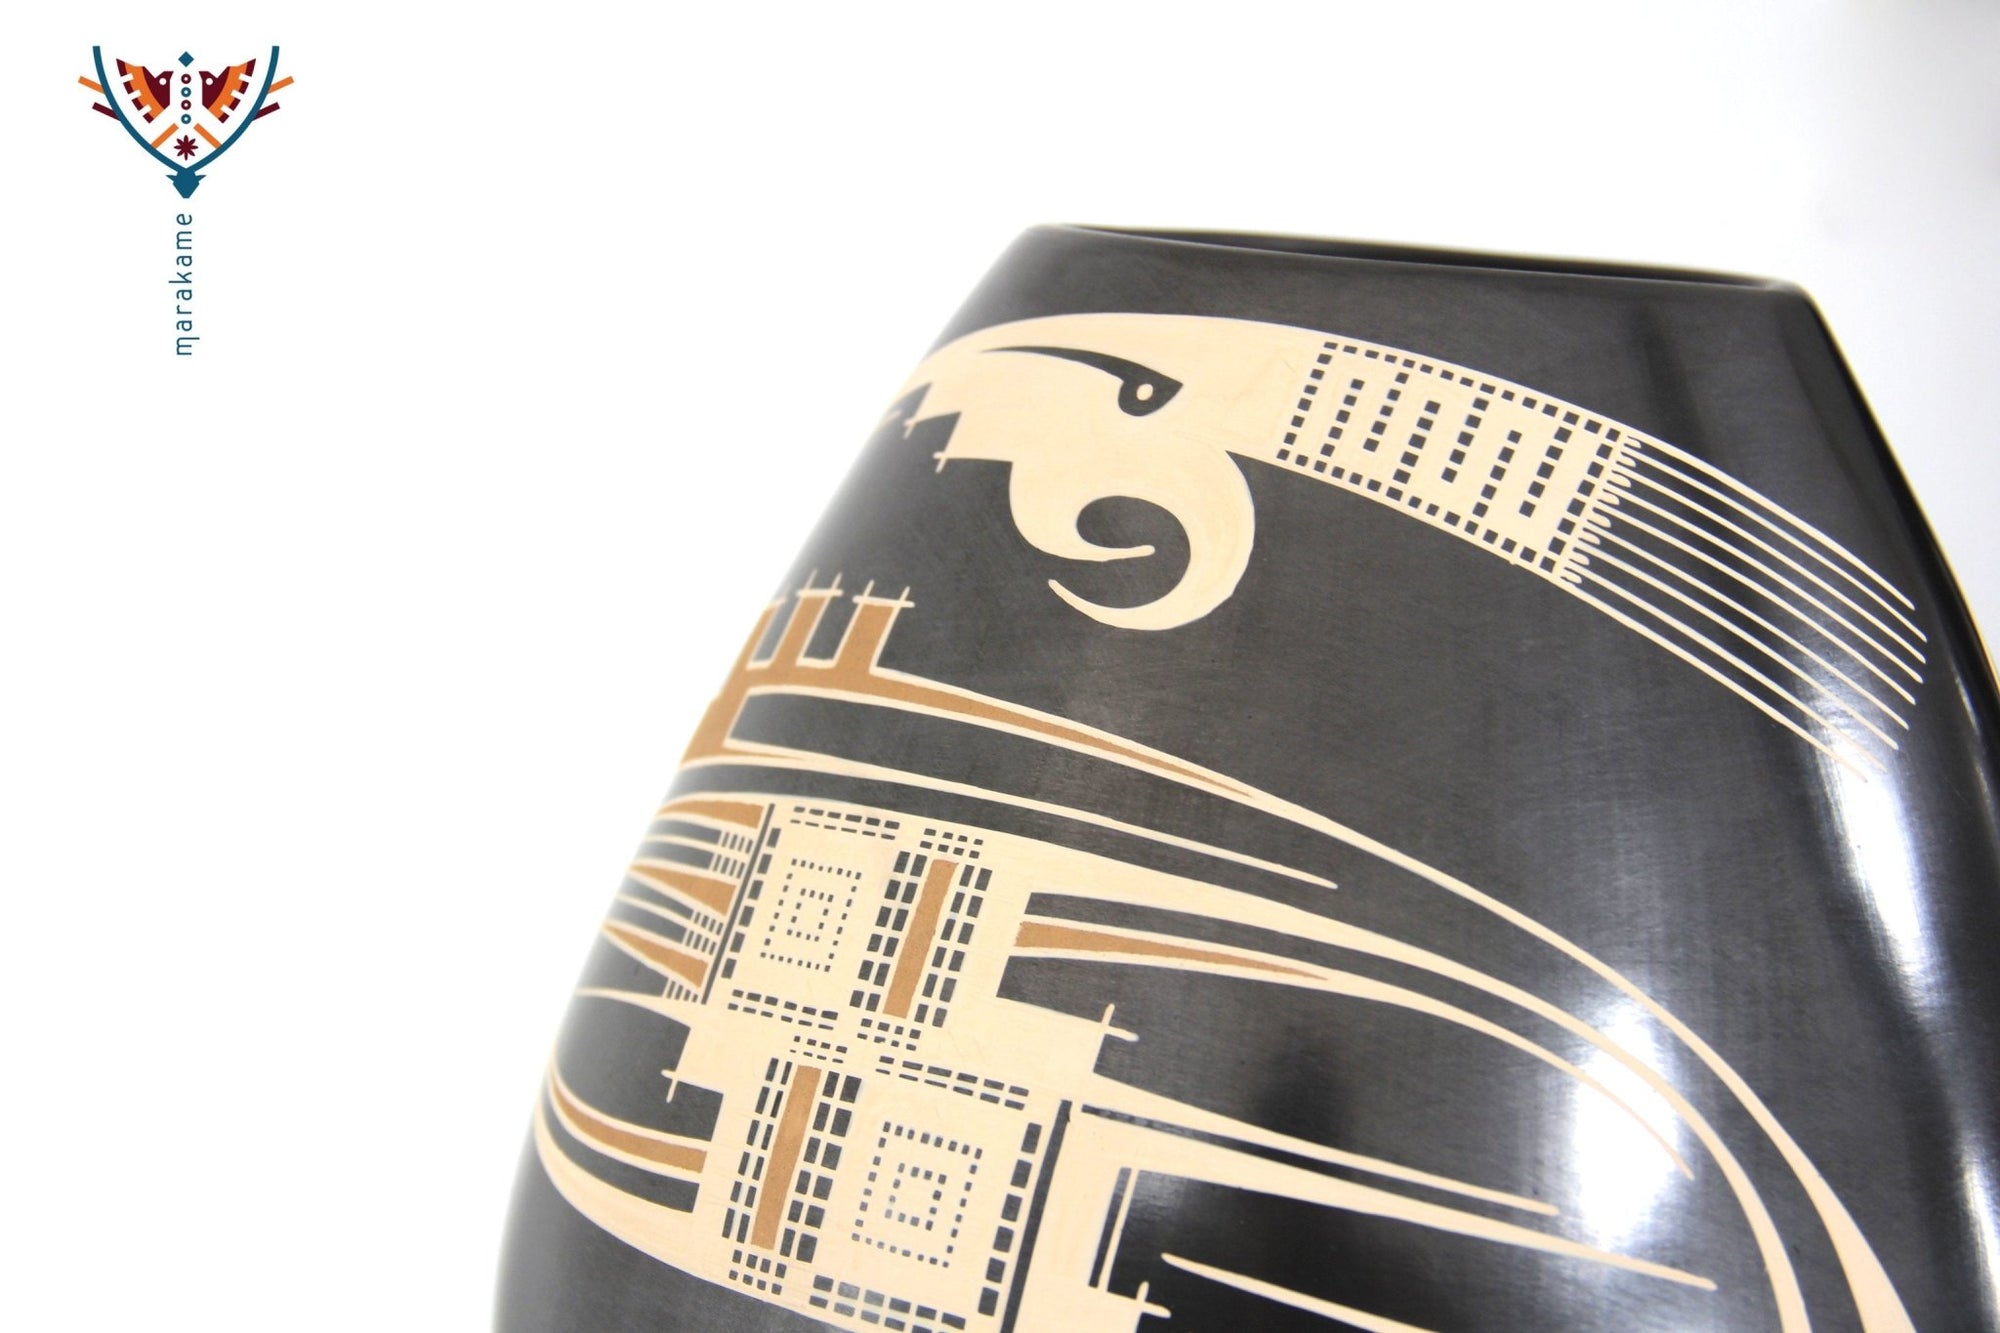 Mata Ortiz Keramik - Handbemaltes schwarzes Stück - Huichol-Kunst - Marakame